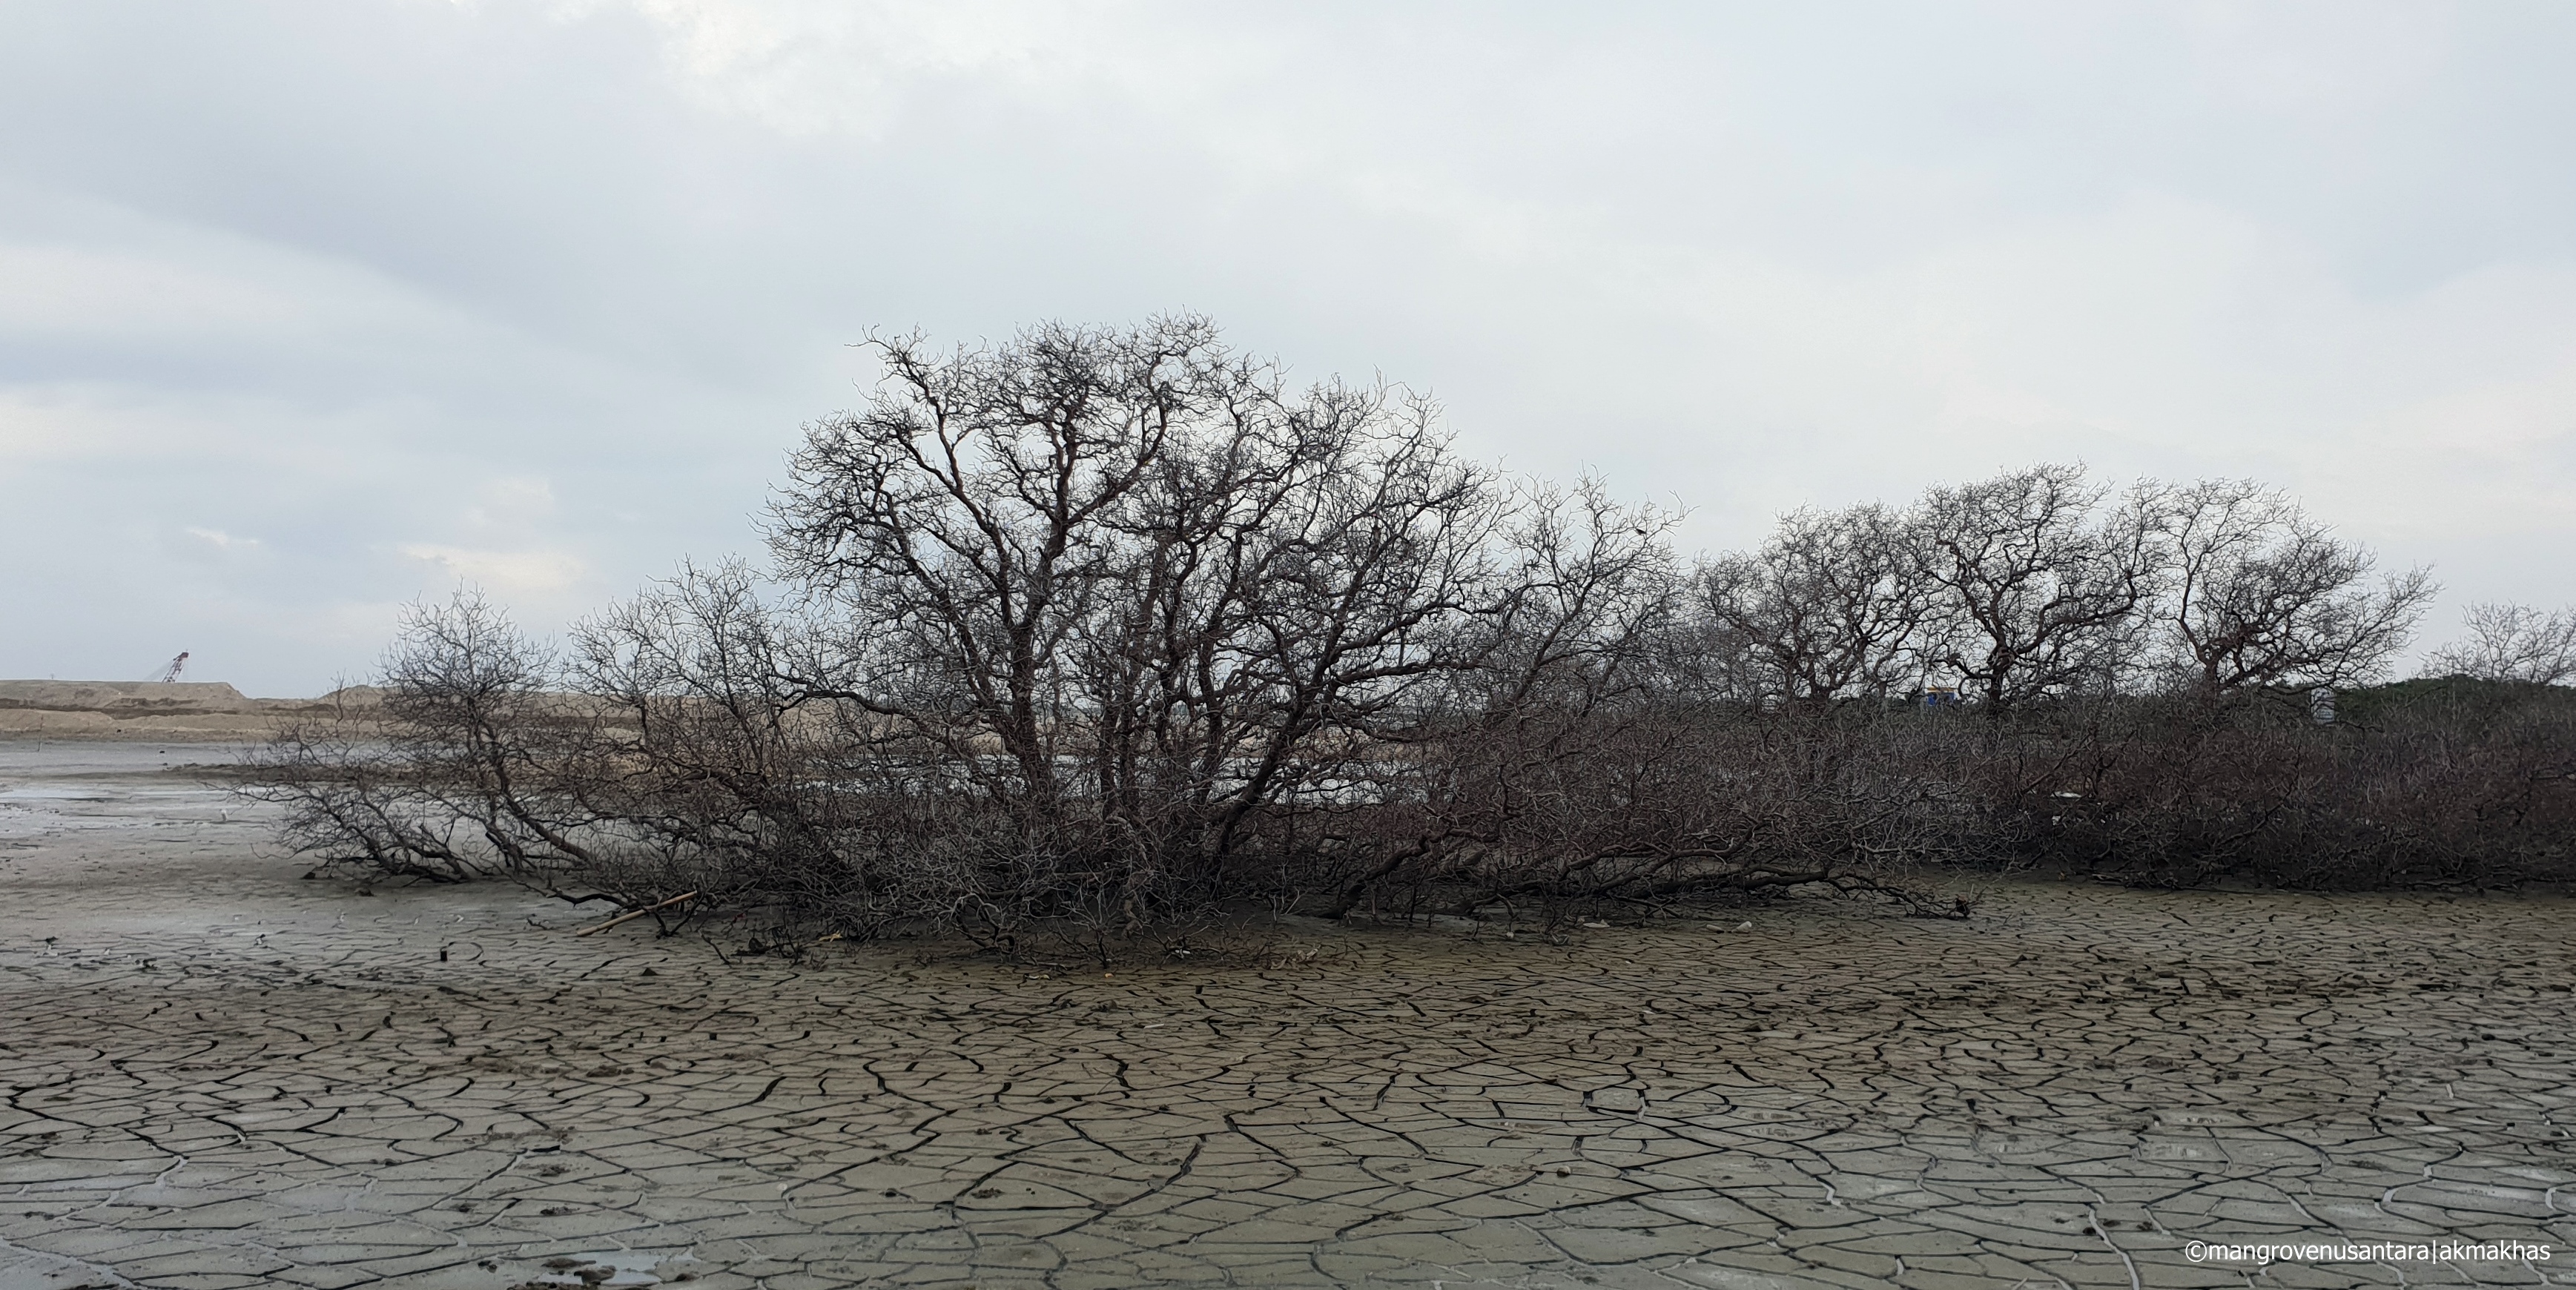  Kondisi mangrove dieback pada jenis Sonnerita sp. yang ada di Teluk Benoa (semua bagian mangrove mengering dan berwana abu-abu), akar nafas tertutup sedimen, dan kondisi permukaan tanah yang kering ditandai dengan rekahan tanah. Foto : akmakhas/mangrove nusantara/Mongabay Indonesia